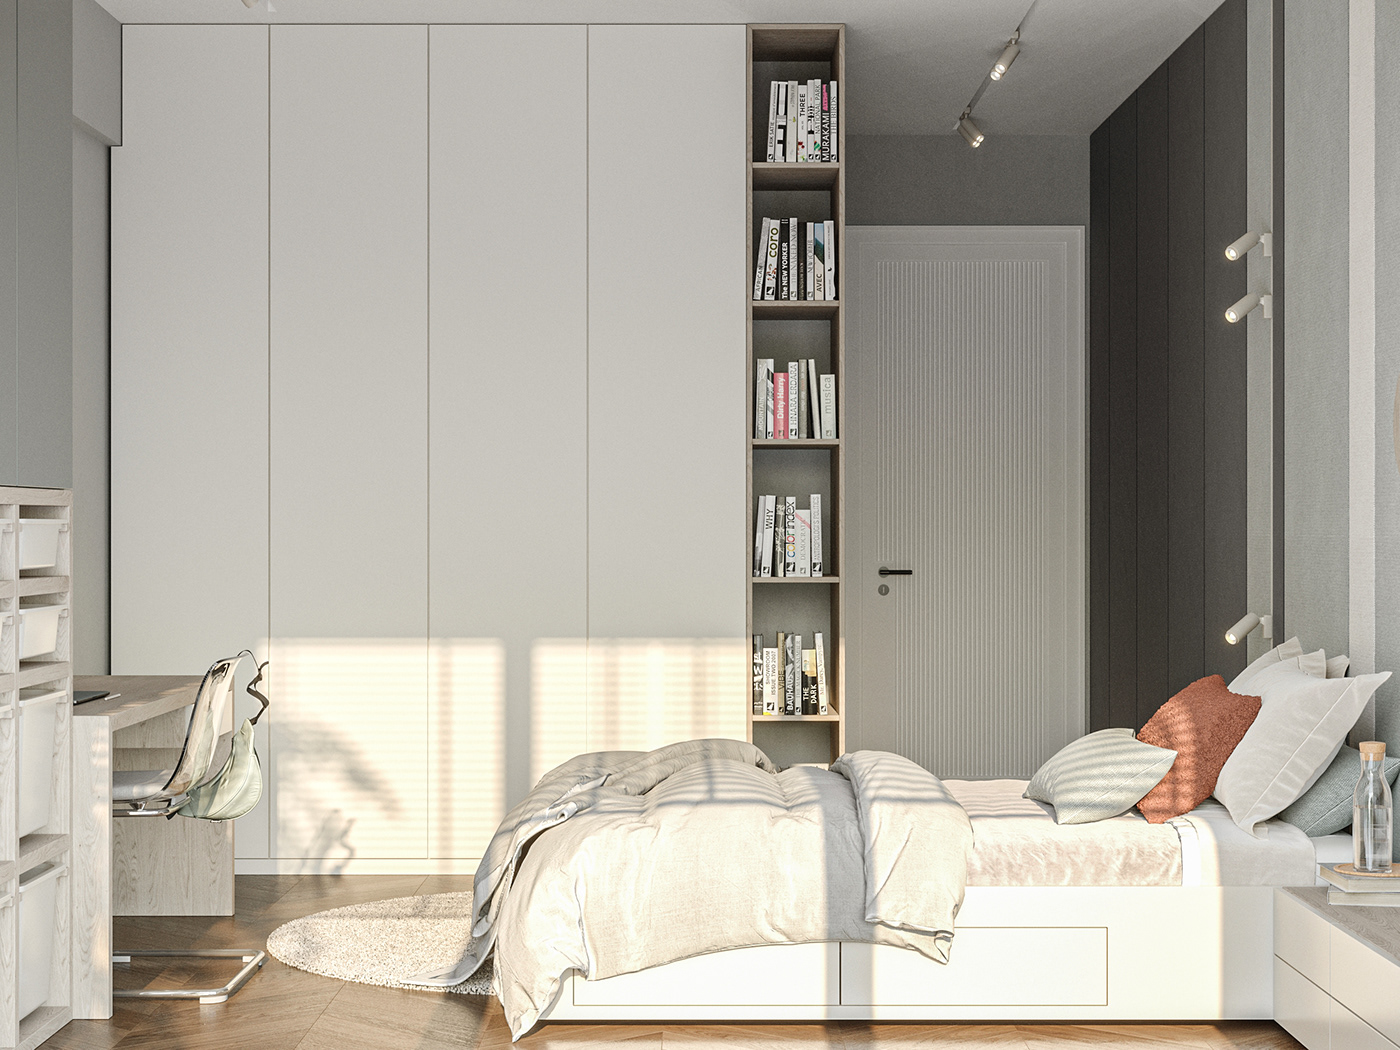 3ds max architecture CGI corona render  interior design  kitchen Marble modern Render visualization